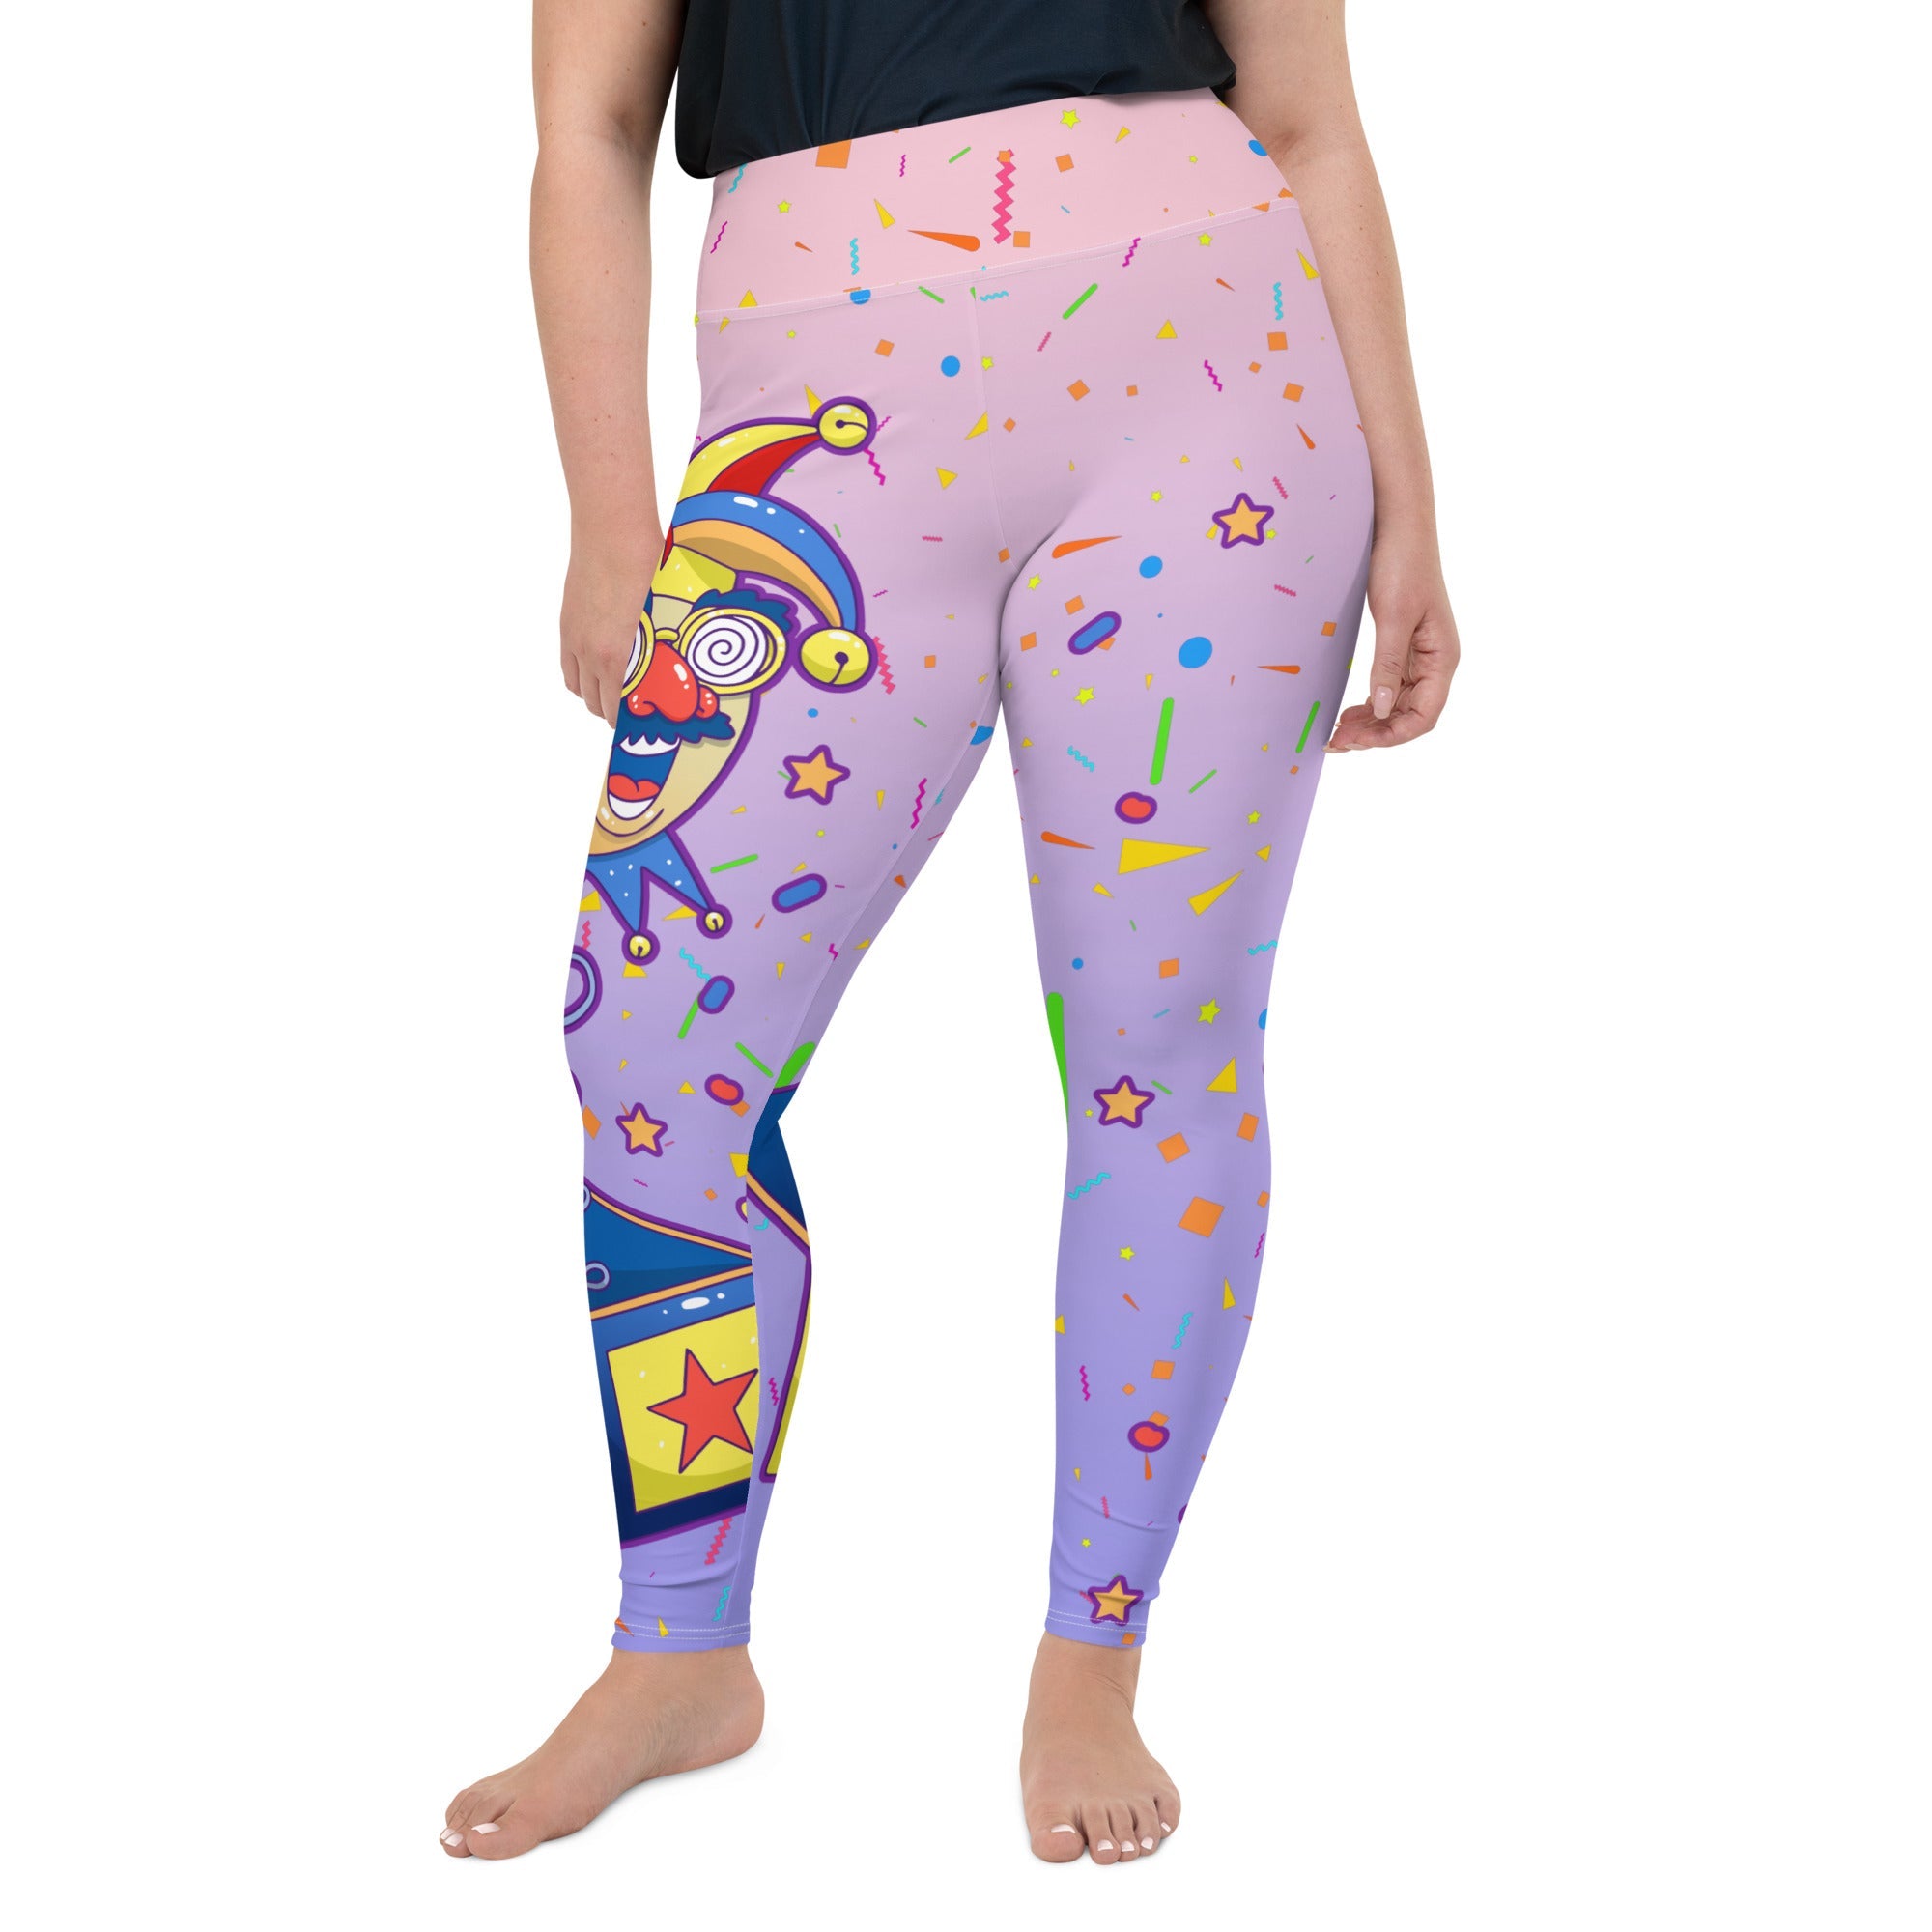 Fiercepulse Stars Multi Coloured Leggings S - Reluv Clothing Australia